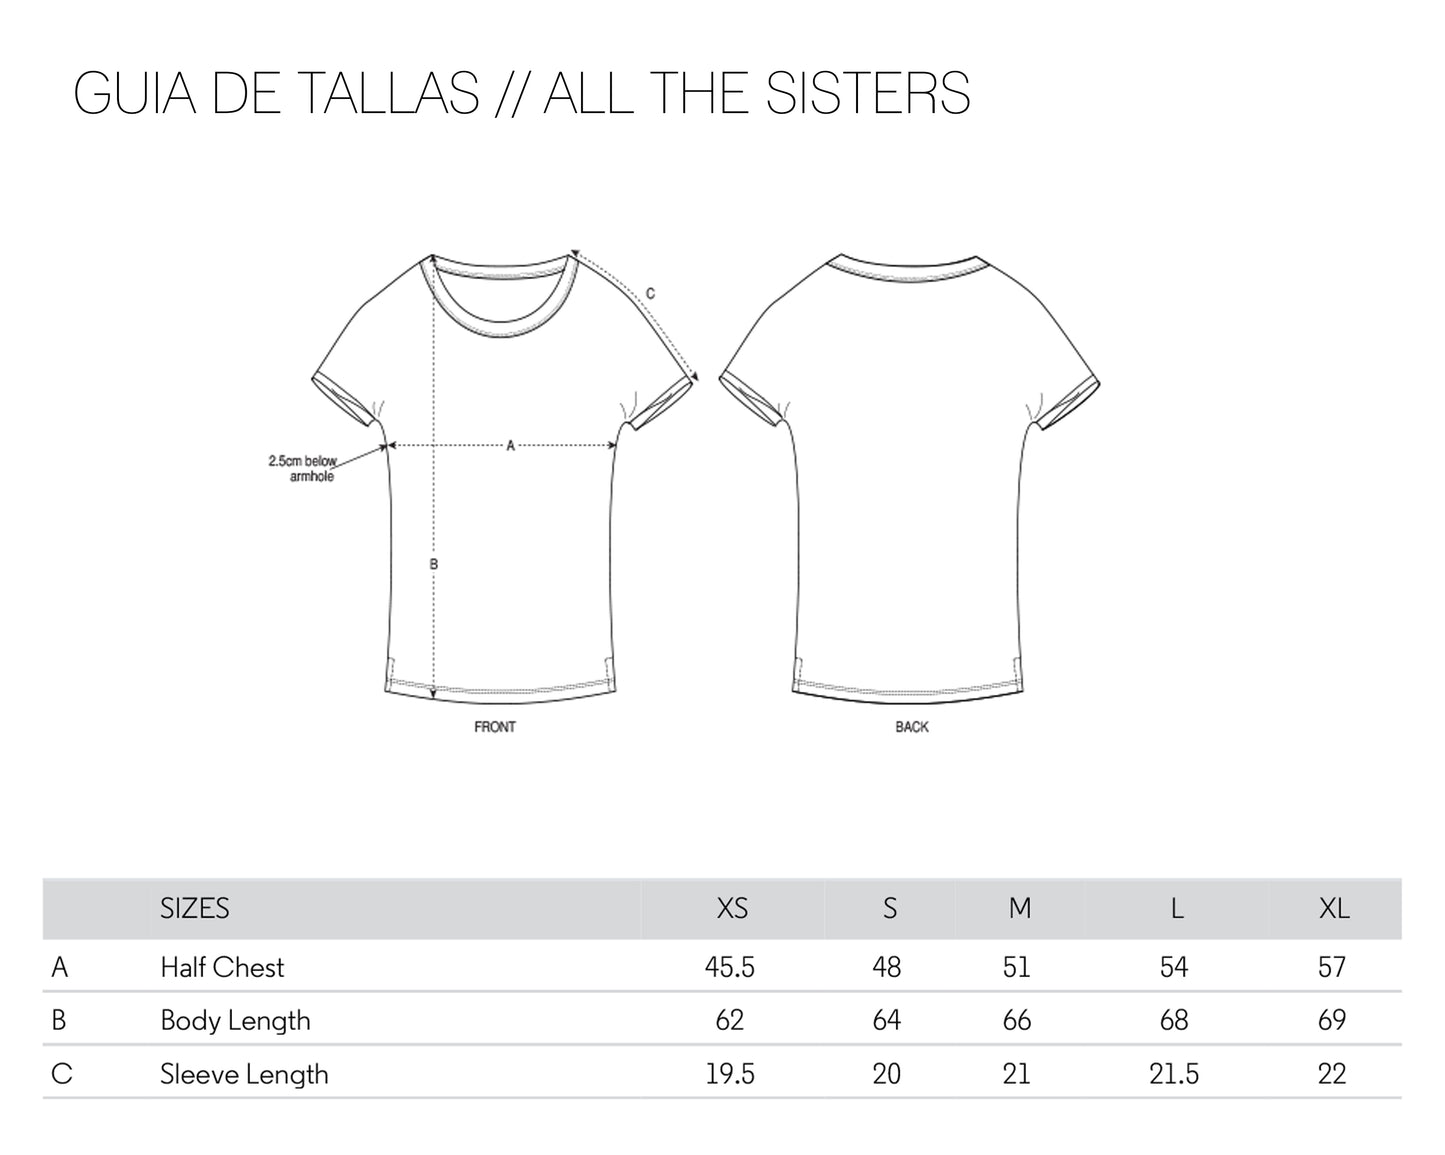 Camiseta blanca ecológica ropa feminista Frida Kahlo Comandanta Ramona EZLN Guía de tallas